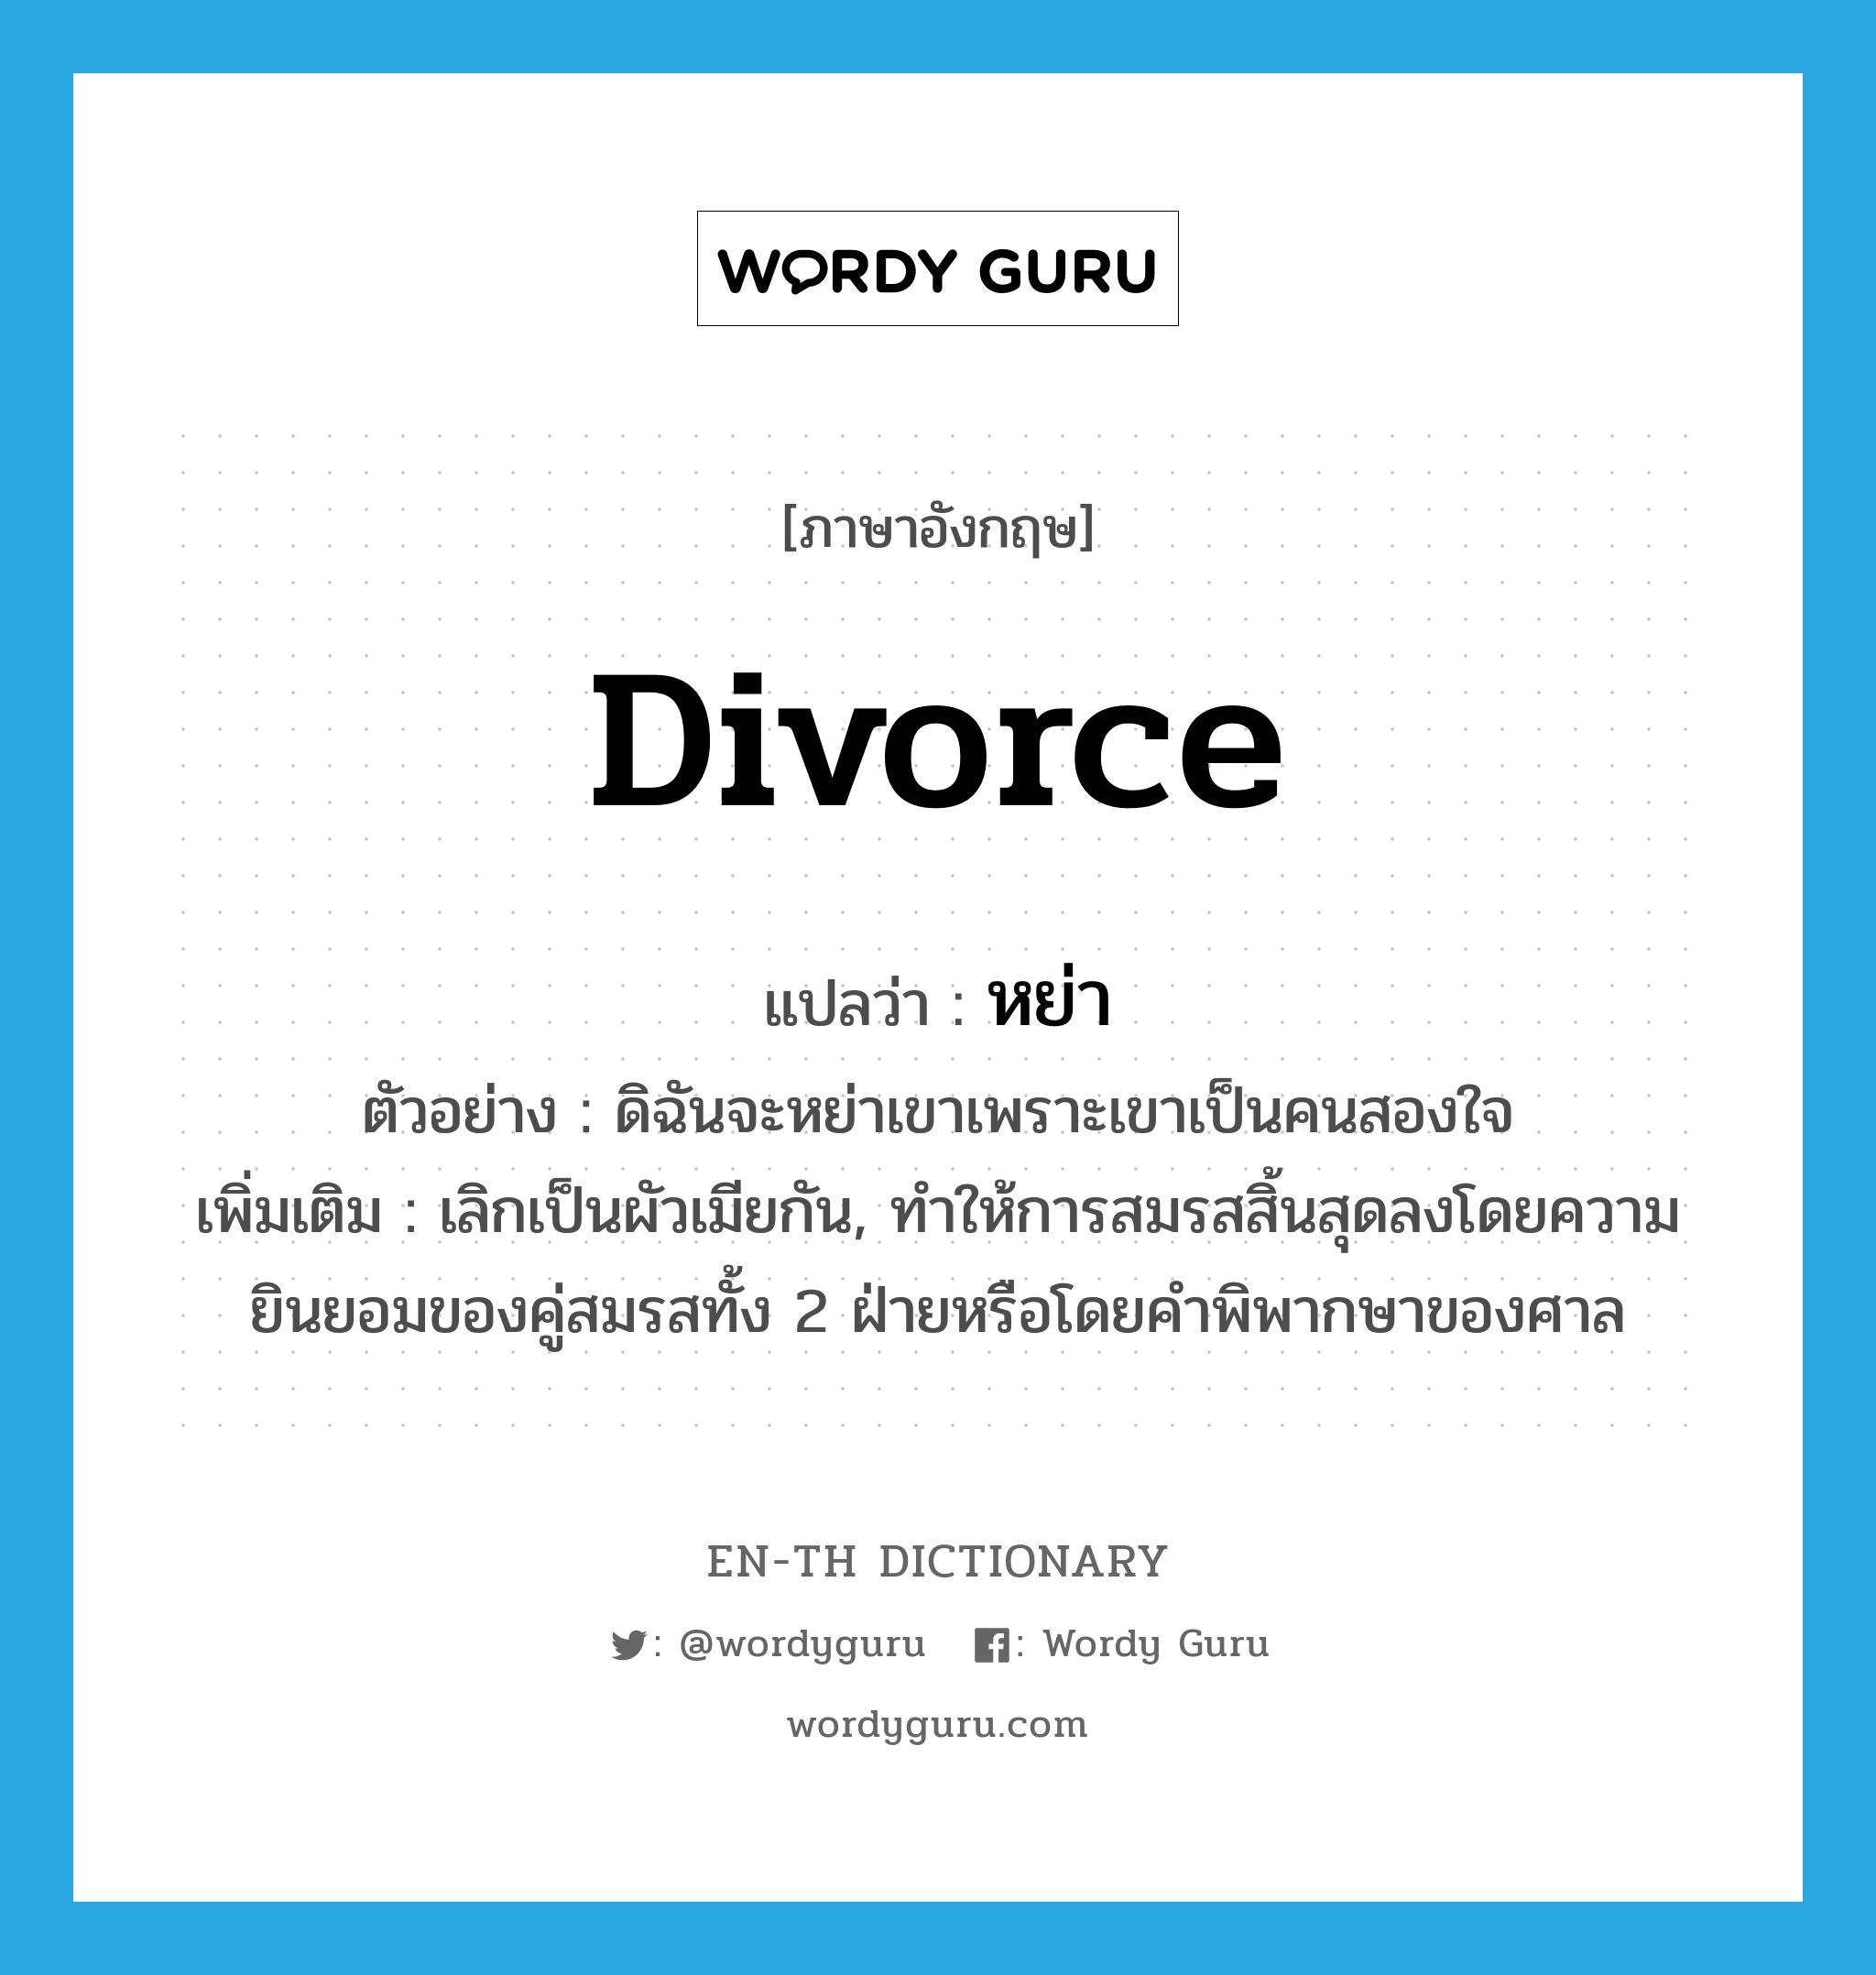 divorce แปลว่า?, คำศัพท์ภาษาอังกฤษ divorce แปลว่า หย่า ประเภท V ตัวอย่าง ดิฉันจะหย่าเขาเพราะเขาเป็นคนสองใจ เพิ่มเติม เลิกเป็นผัวเมียกัน, ทำให้การสมรสสิ้นสุดลงโดยความยินยอมของคู่สมรสทั้ง 2 ฝ่ายหรือโดยคำพิพากษาของศาล หมวด V